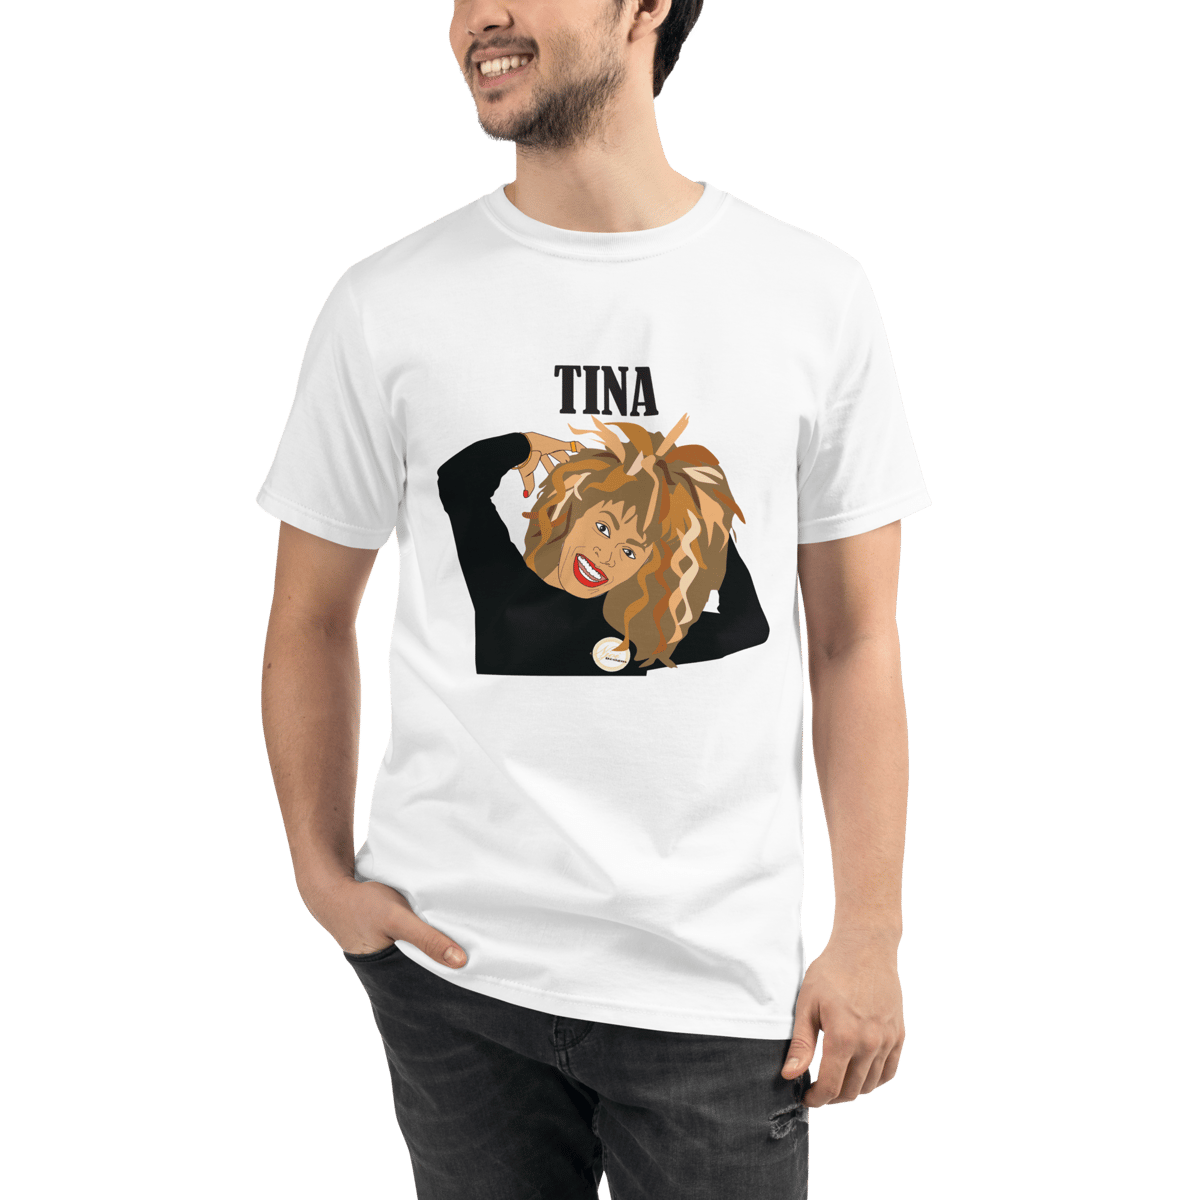 Image of Tina Turner Illustration on Unisex Short Sleeve T-Shirt